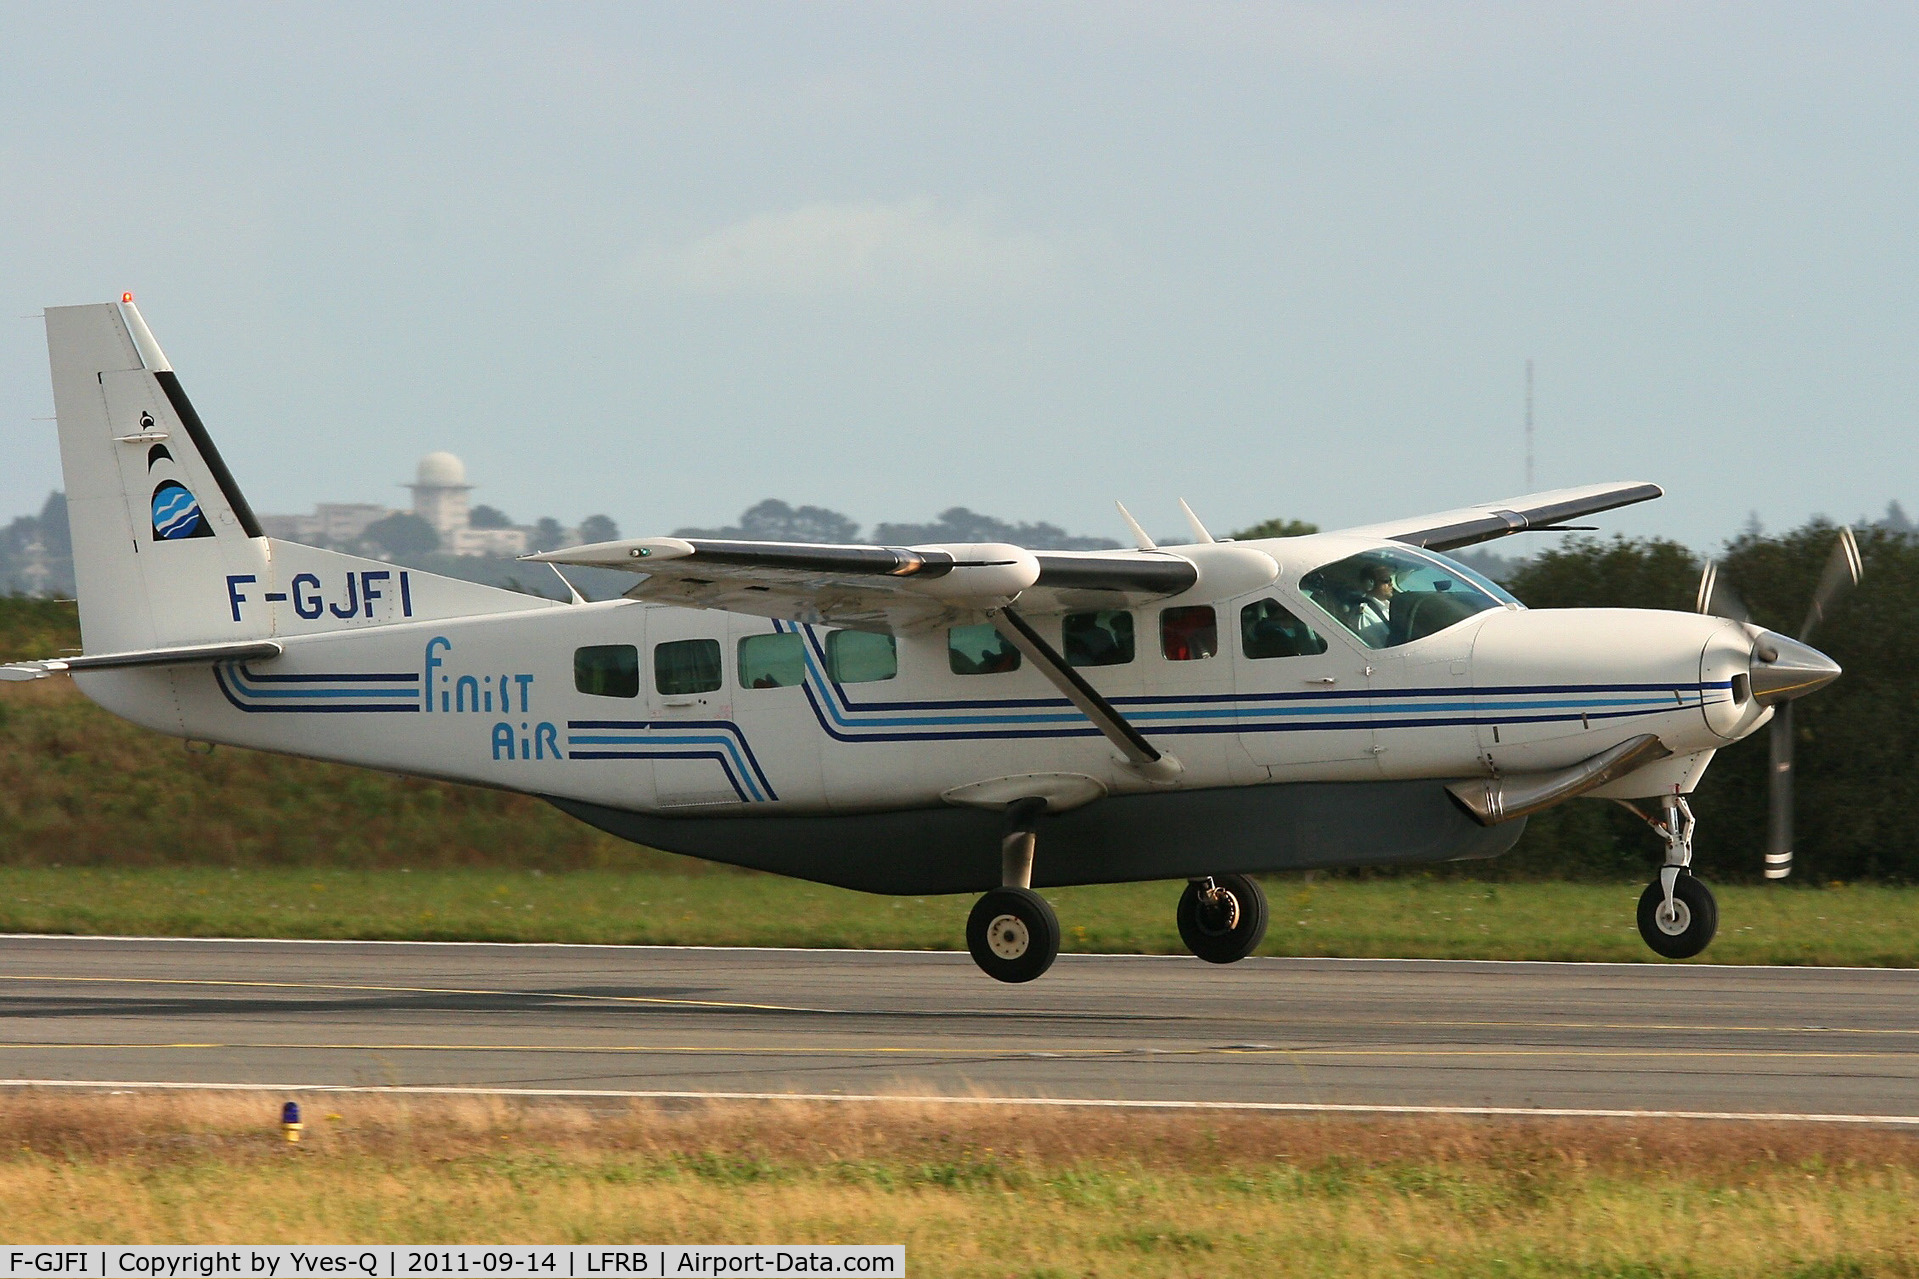 F-GJFI, 1990 Cessna 208B Grand Caravan C/N 208B-0230, Cessna 208B Grand Caravan, On final rwy 25L, Brest-Bretagne Airport (LFRB - BES)